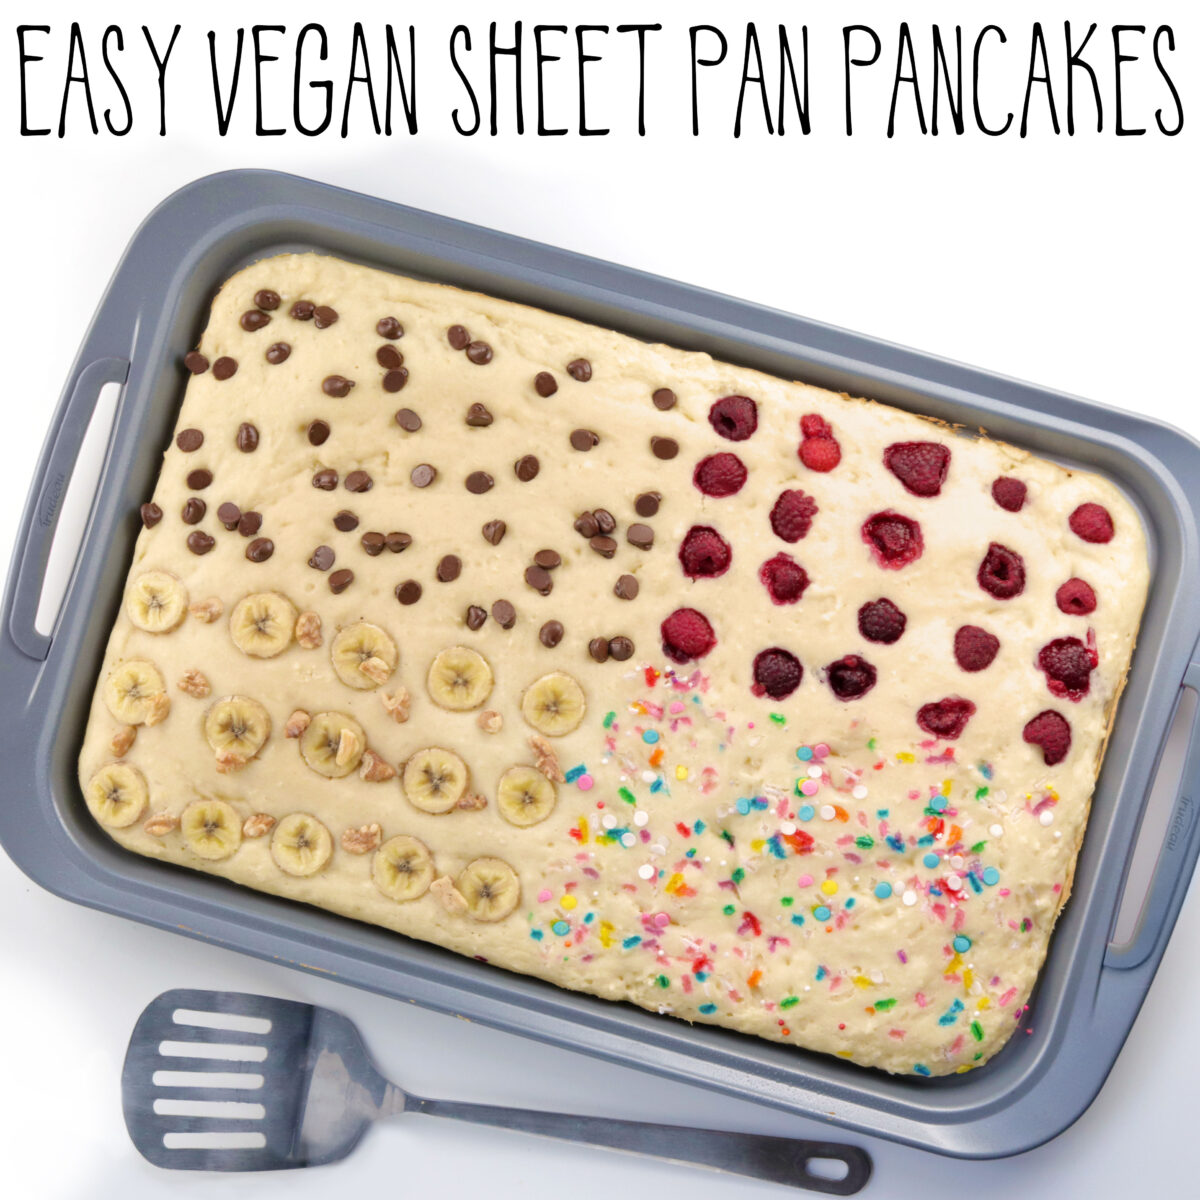 vegan sheet pan pancakes - my favorite vegan breakfast ideas